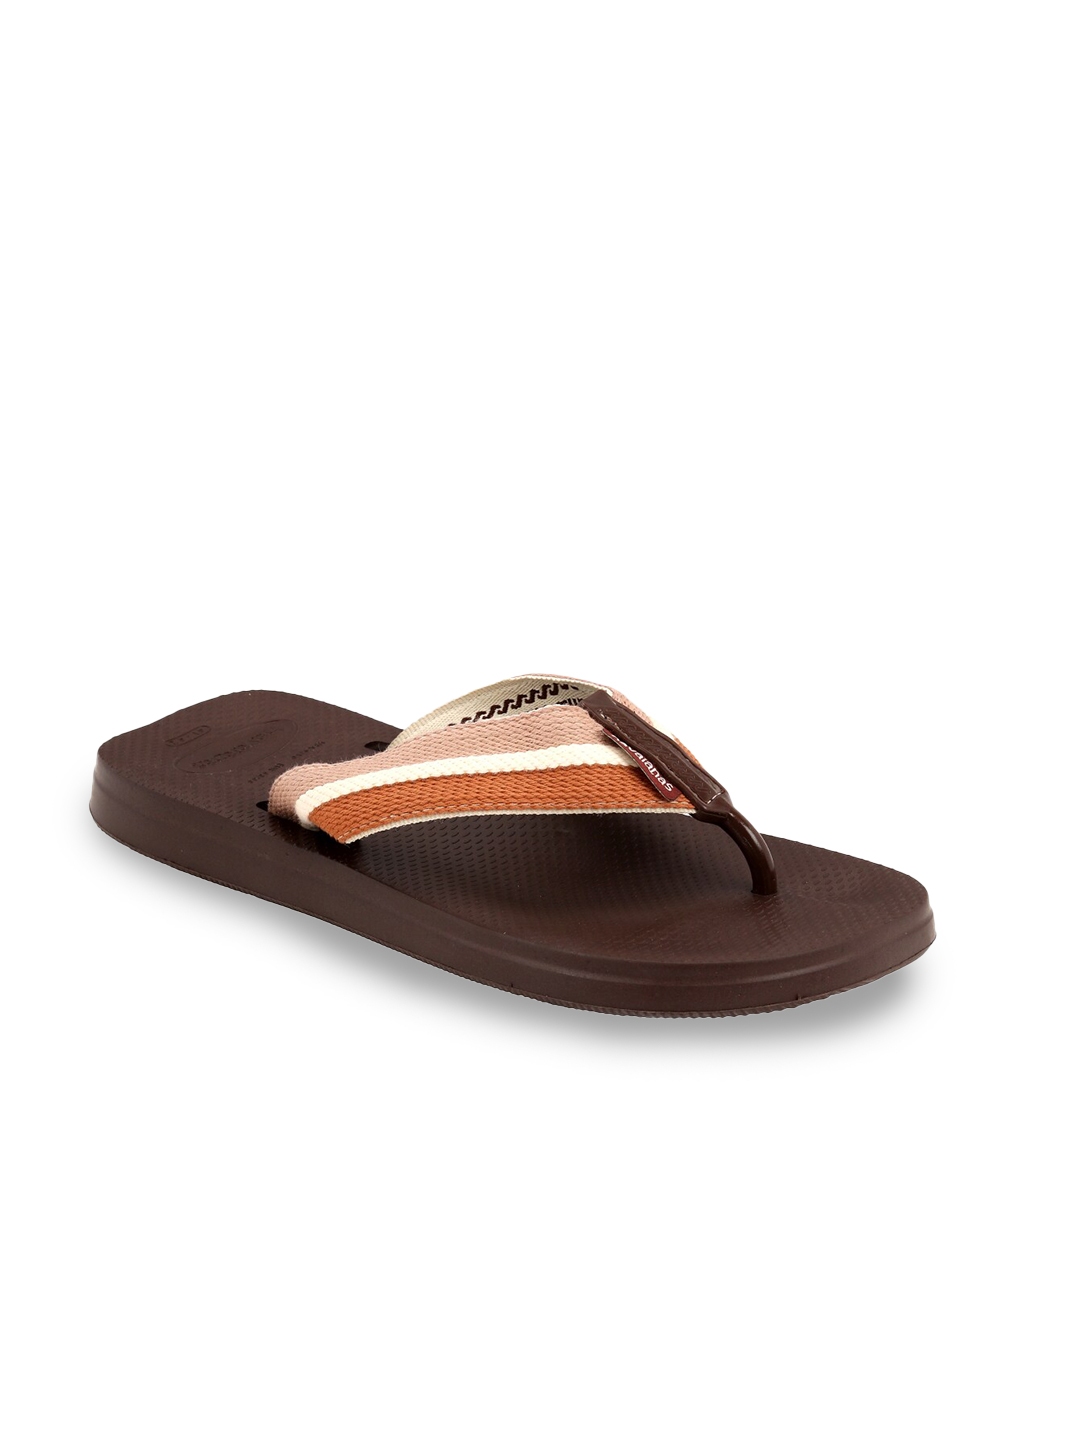 Buy Havaianas Men Brown Solid - Flip Flops for Men 15454836 | Myntra